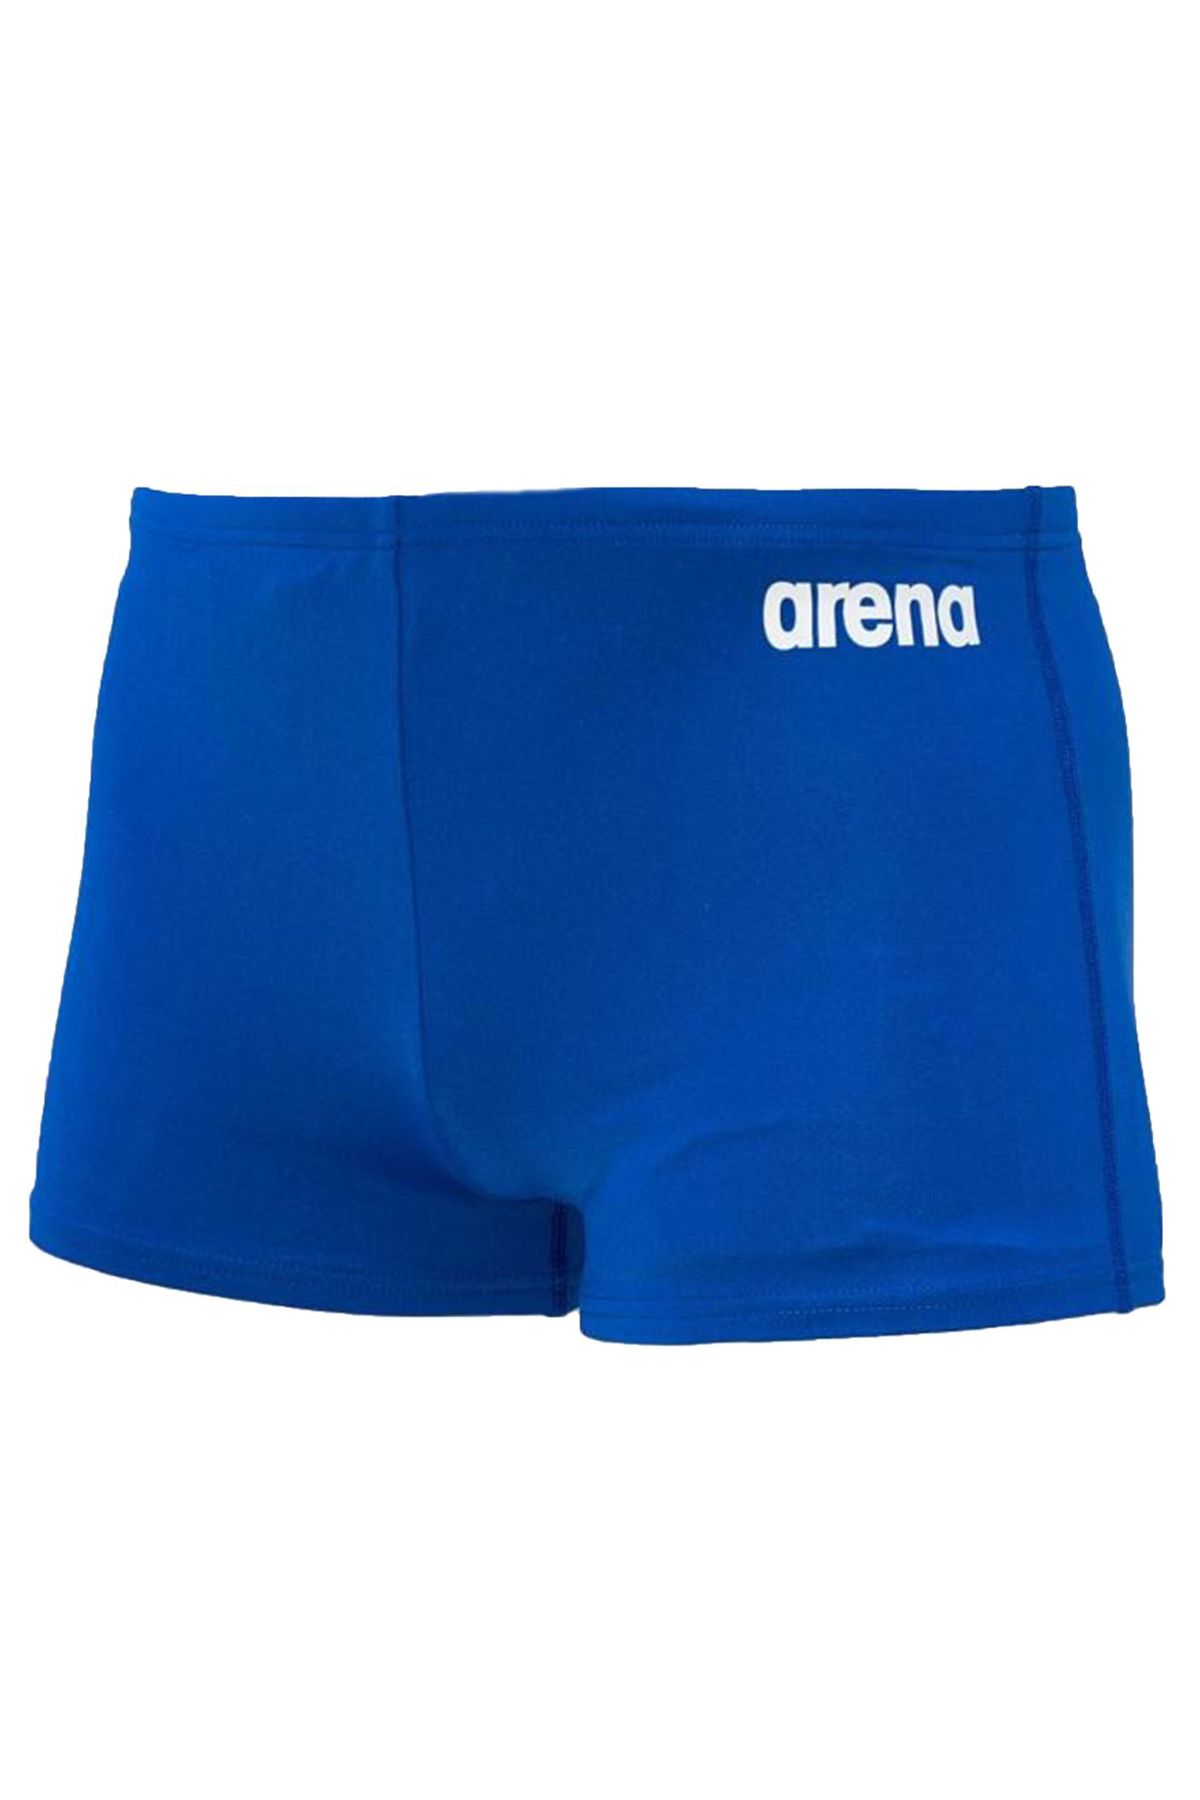 Arena Solid Jr Çocuk Mavi Yüzücü Mayo 2a25972